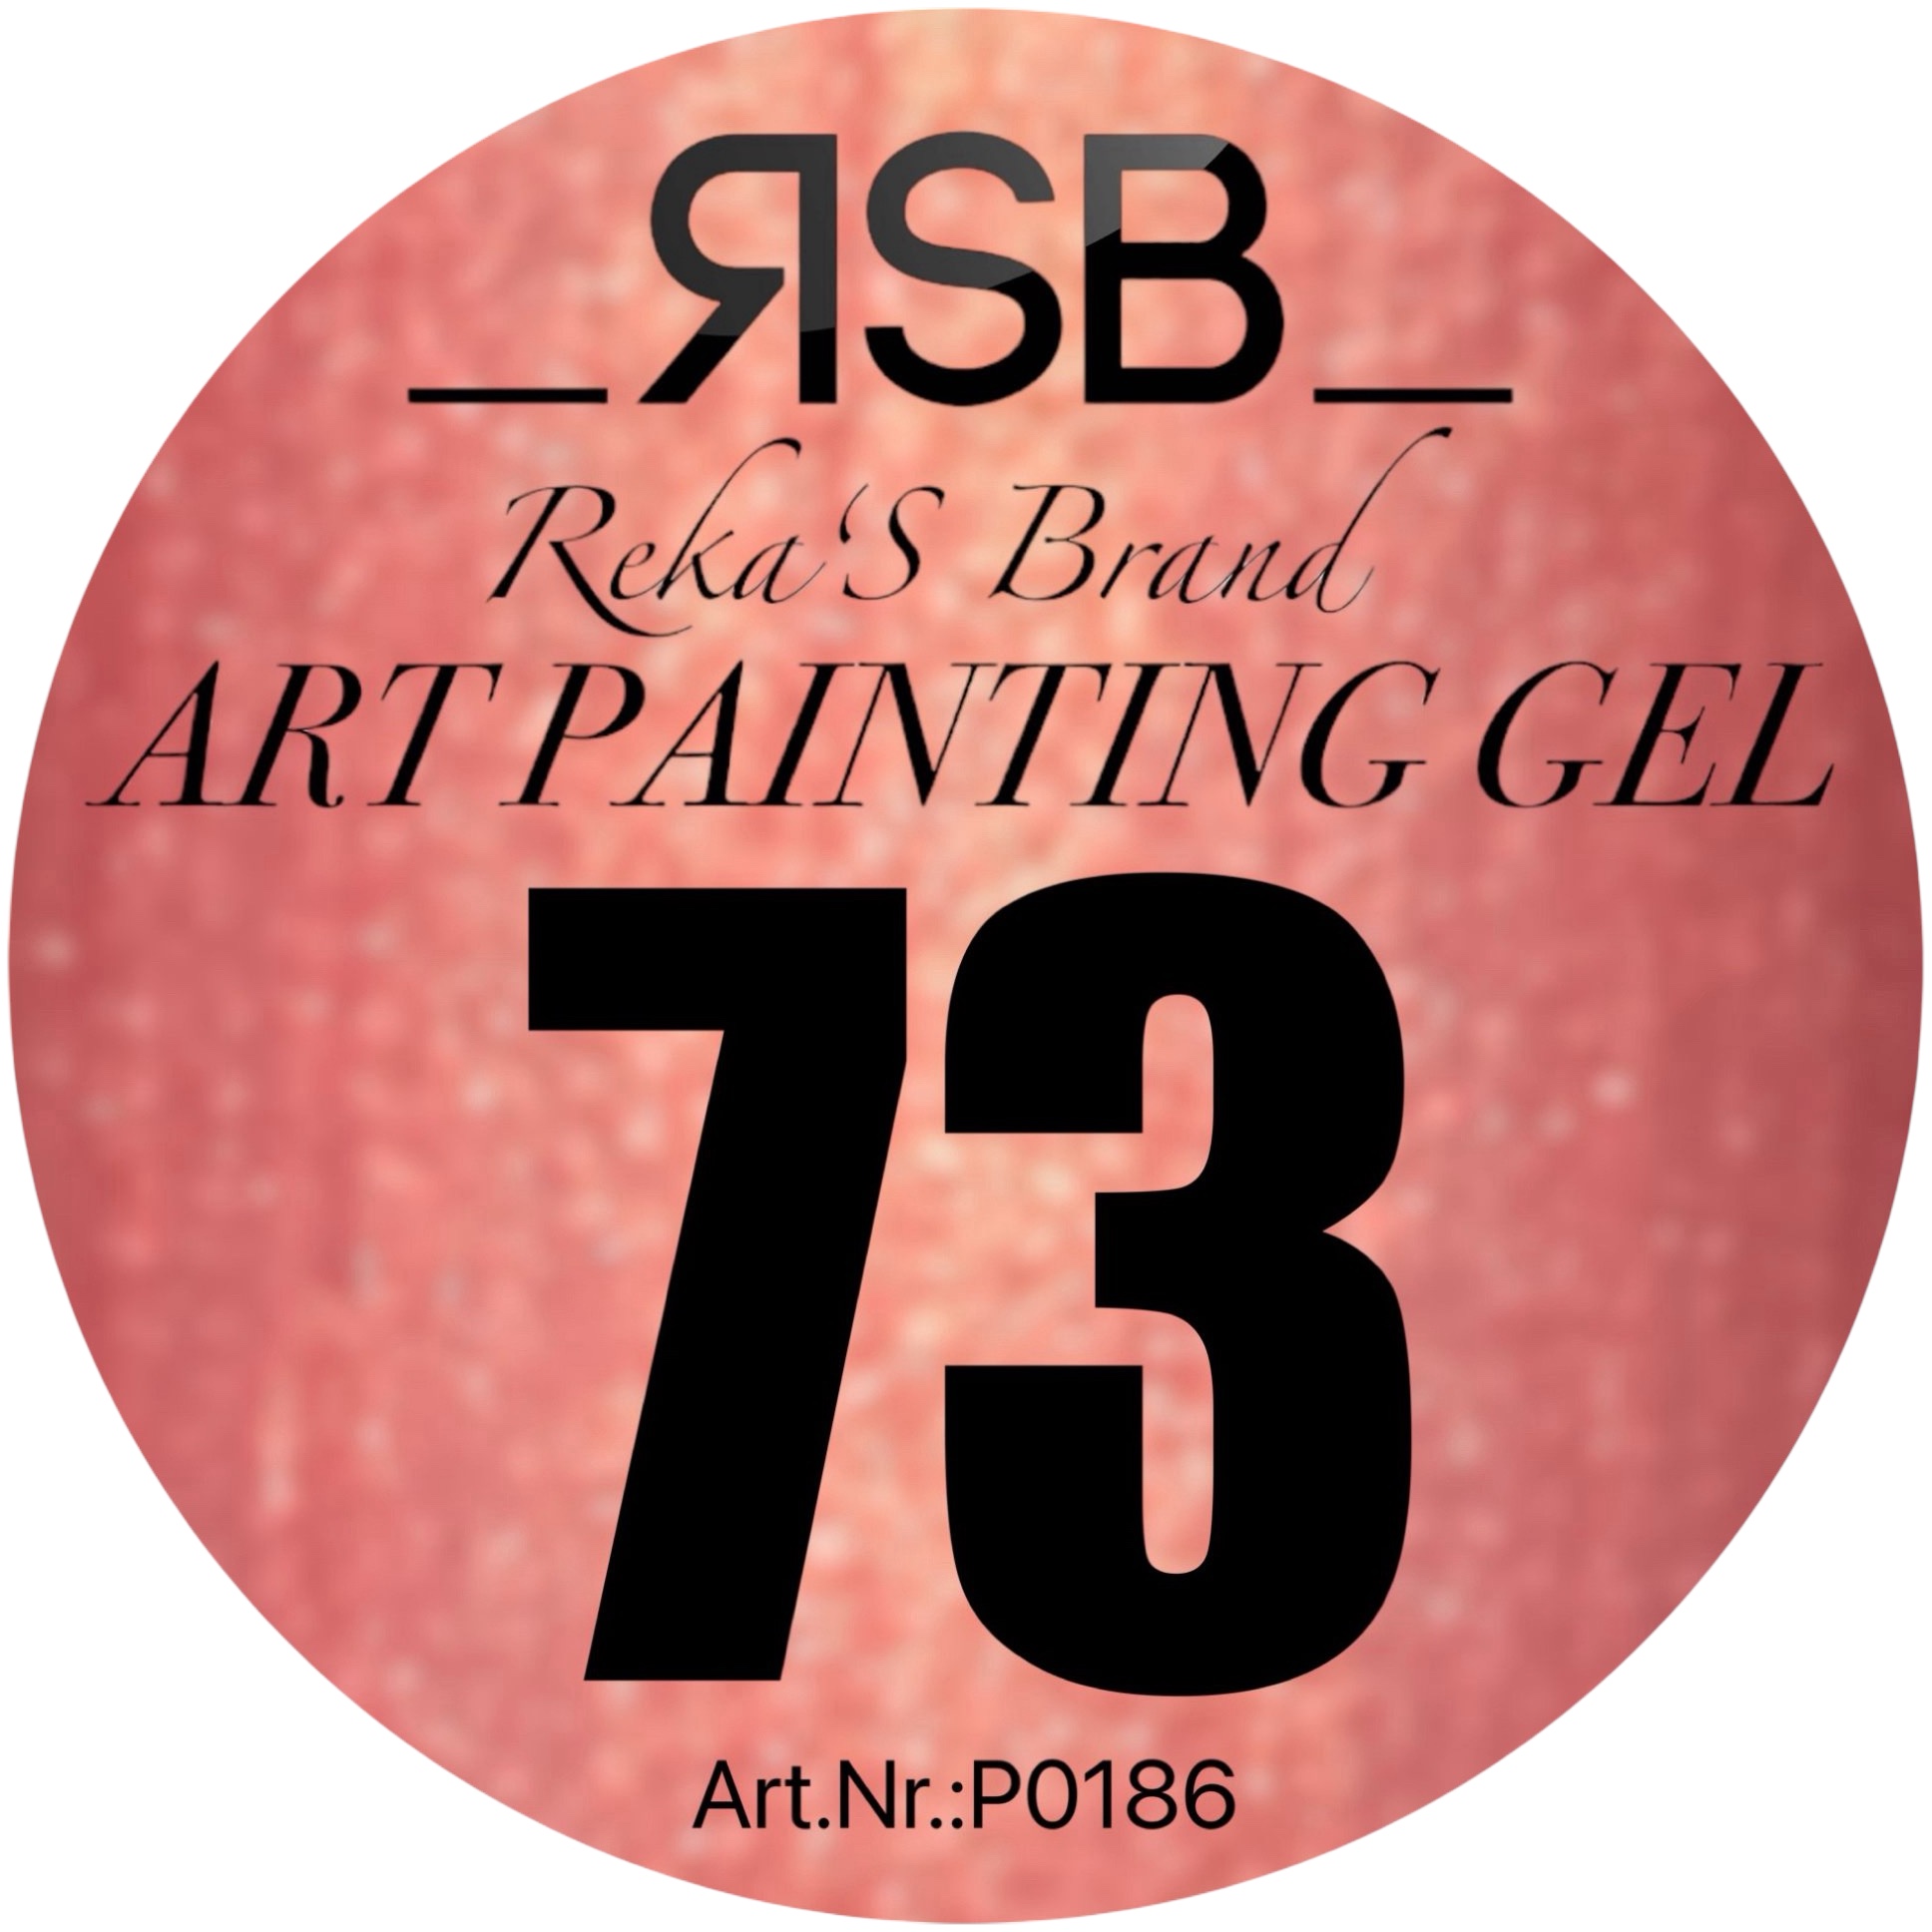 ART PAINTING GEL 73